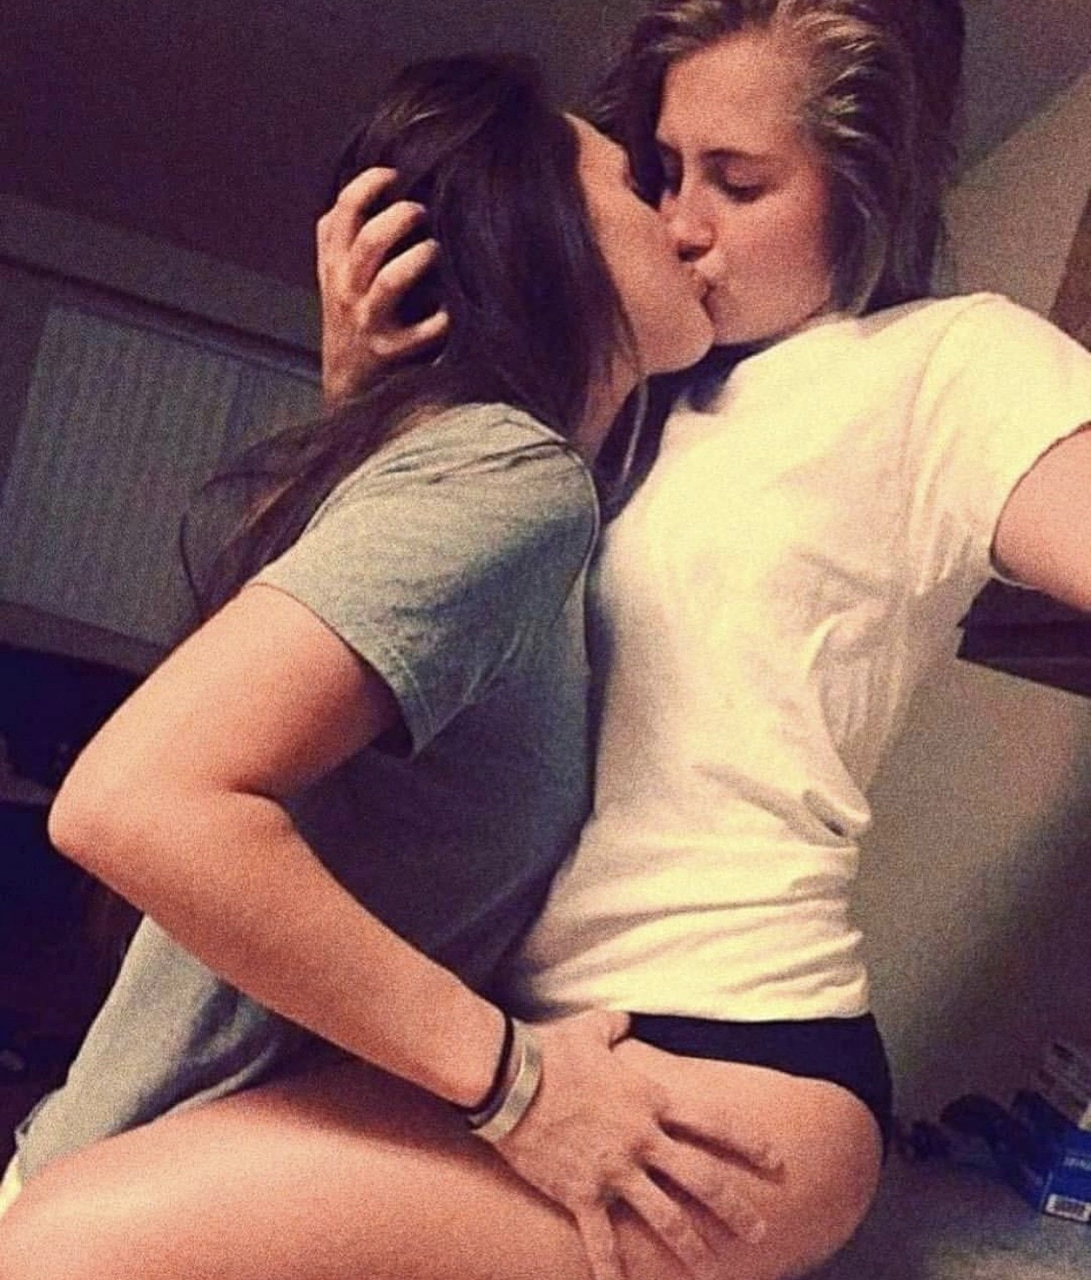 doris phelps recommends lesbians kissing images pic